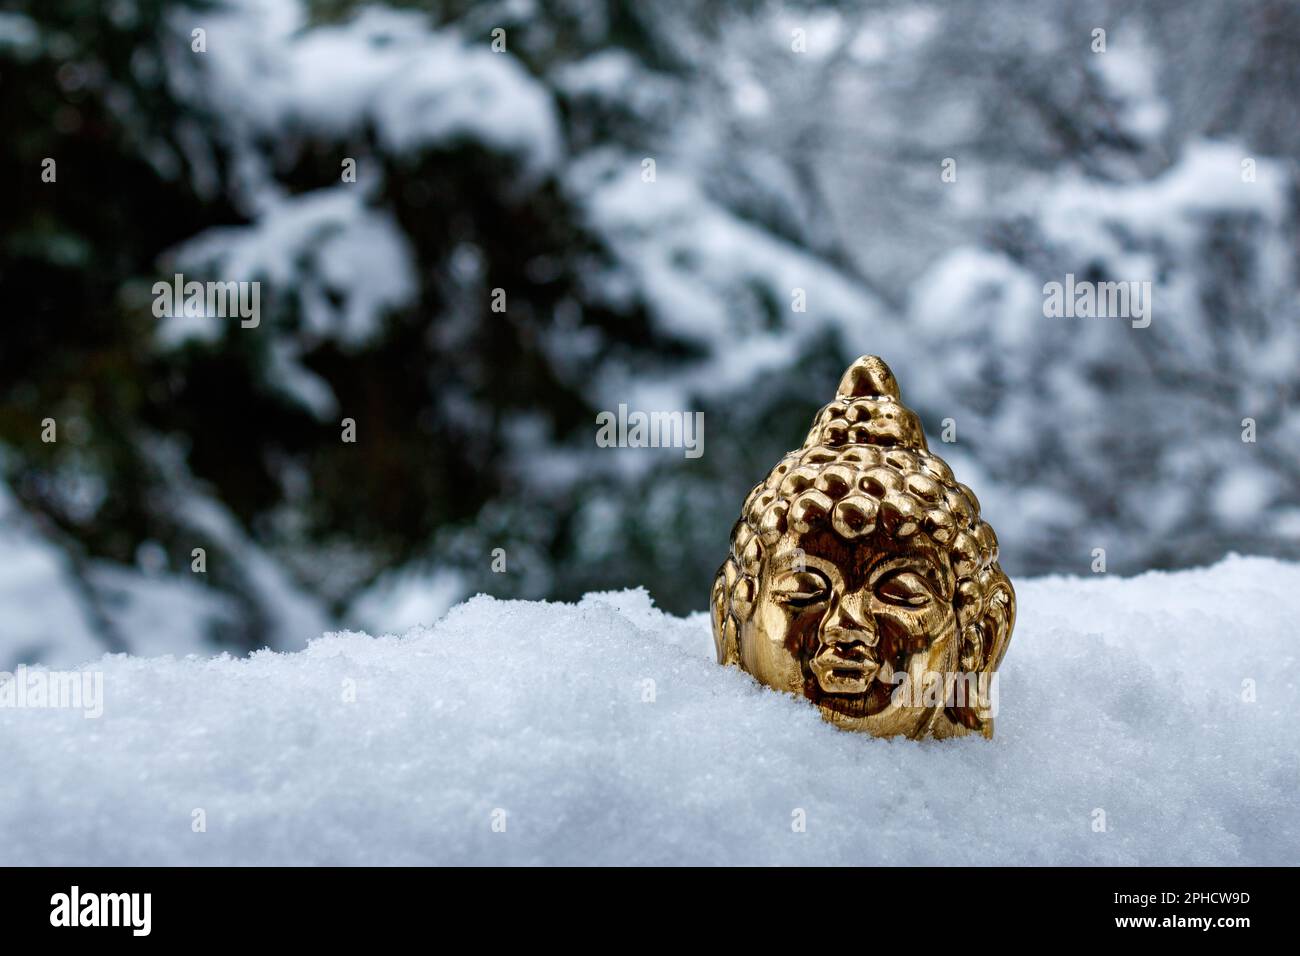 bouddha doré face contre un arbre recouvert de neige. concept de méditation Banque D'Images